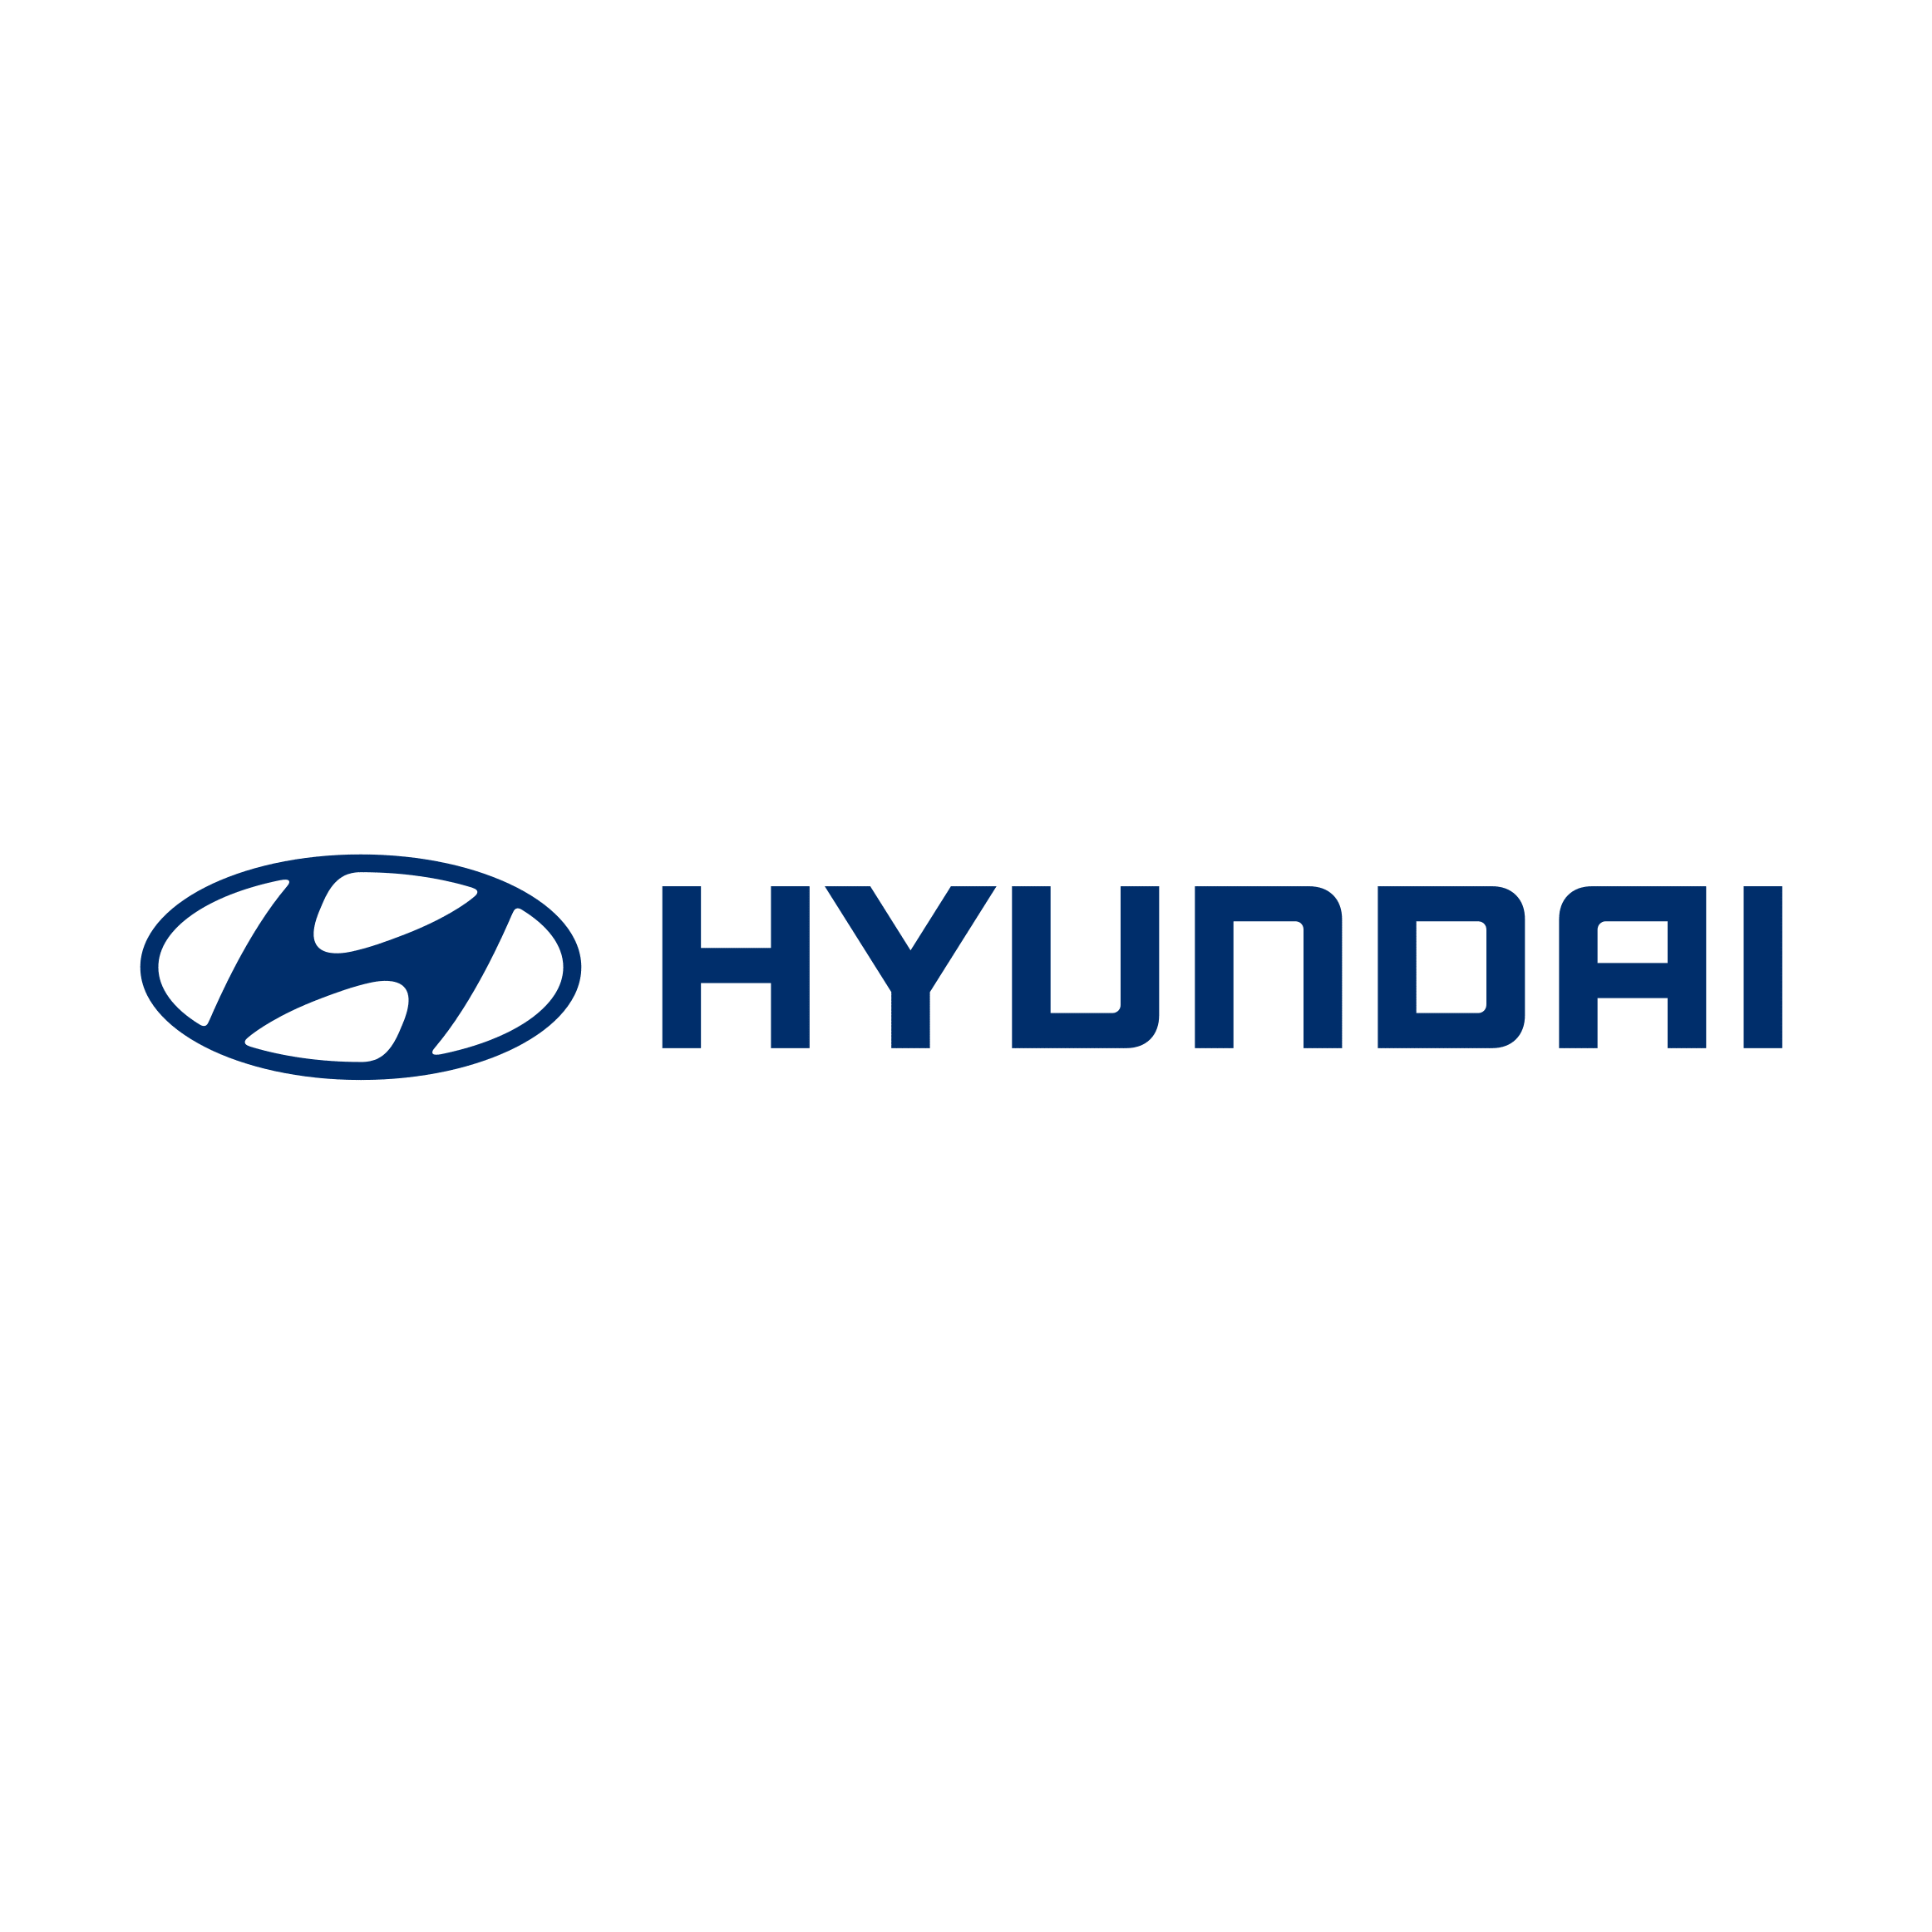 logo hyundai-min.png